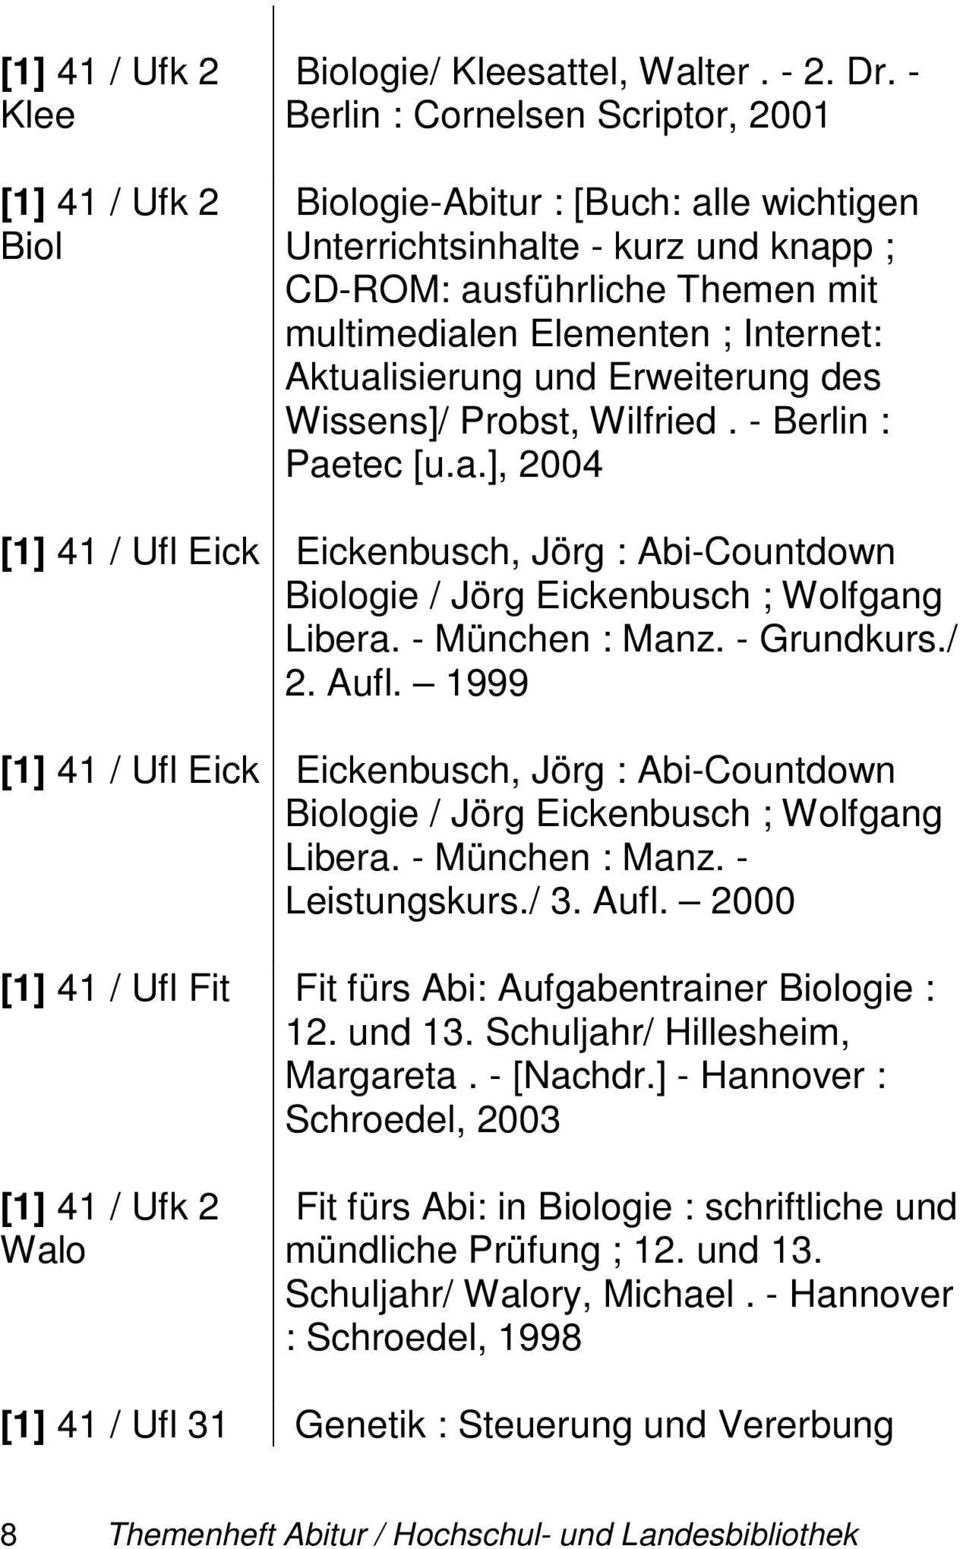 Erweiterung des Wissens]/ Probst, Wilfried. - Berlin : Paetec [u.a.], 2004 [1] 41 / Ufl Eick Eickenbusch, Jörg : Abi-Countdown Biologie / Jörg Eickenbusch ; Wolfgang Libera. - München : Manz.